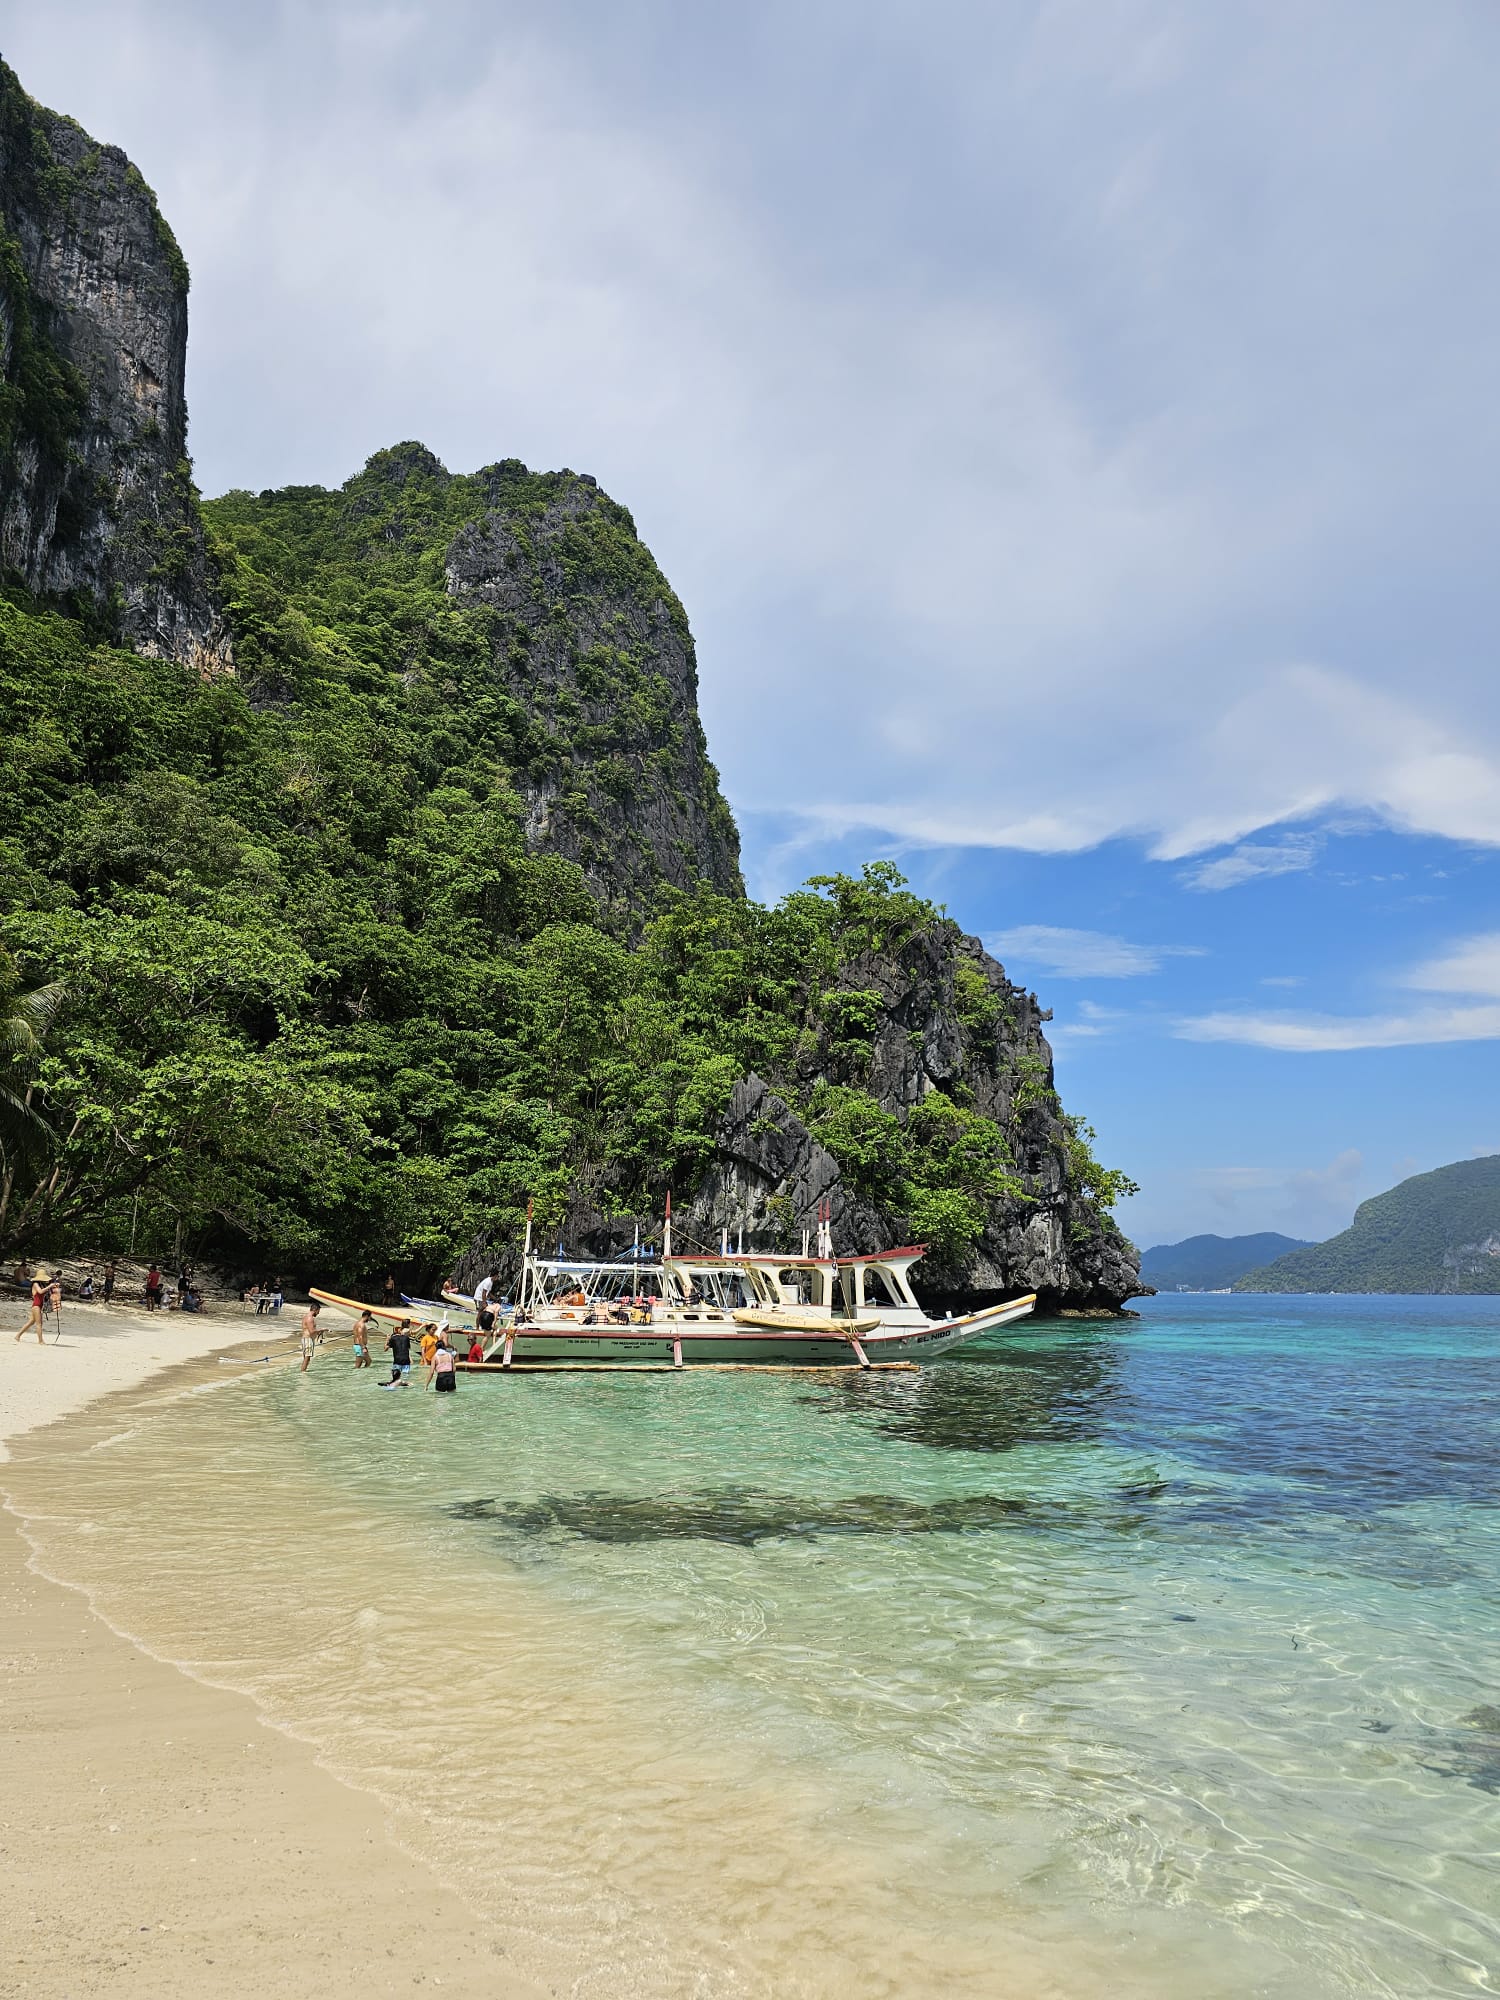 Paisagem de uma praia paradisíaca das Filipinas, com um barco ao fundo